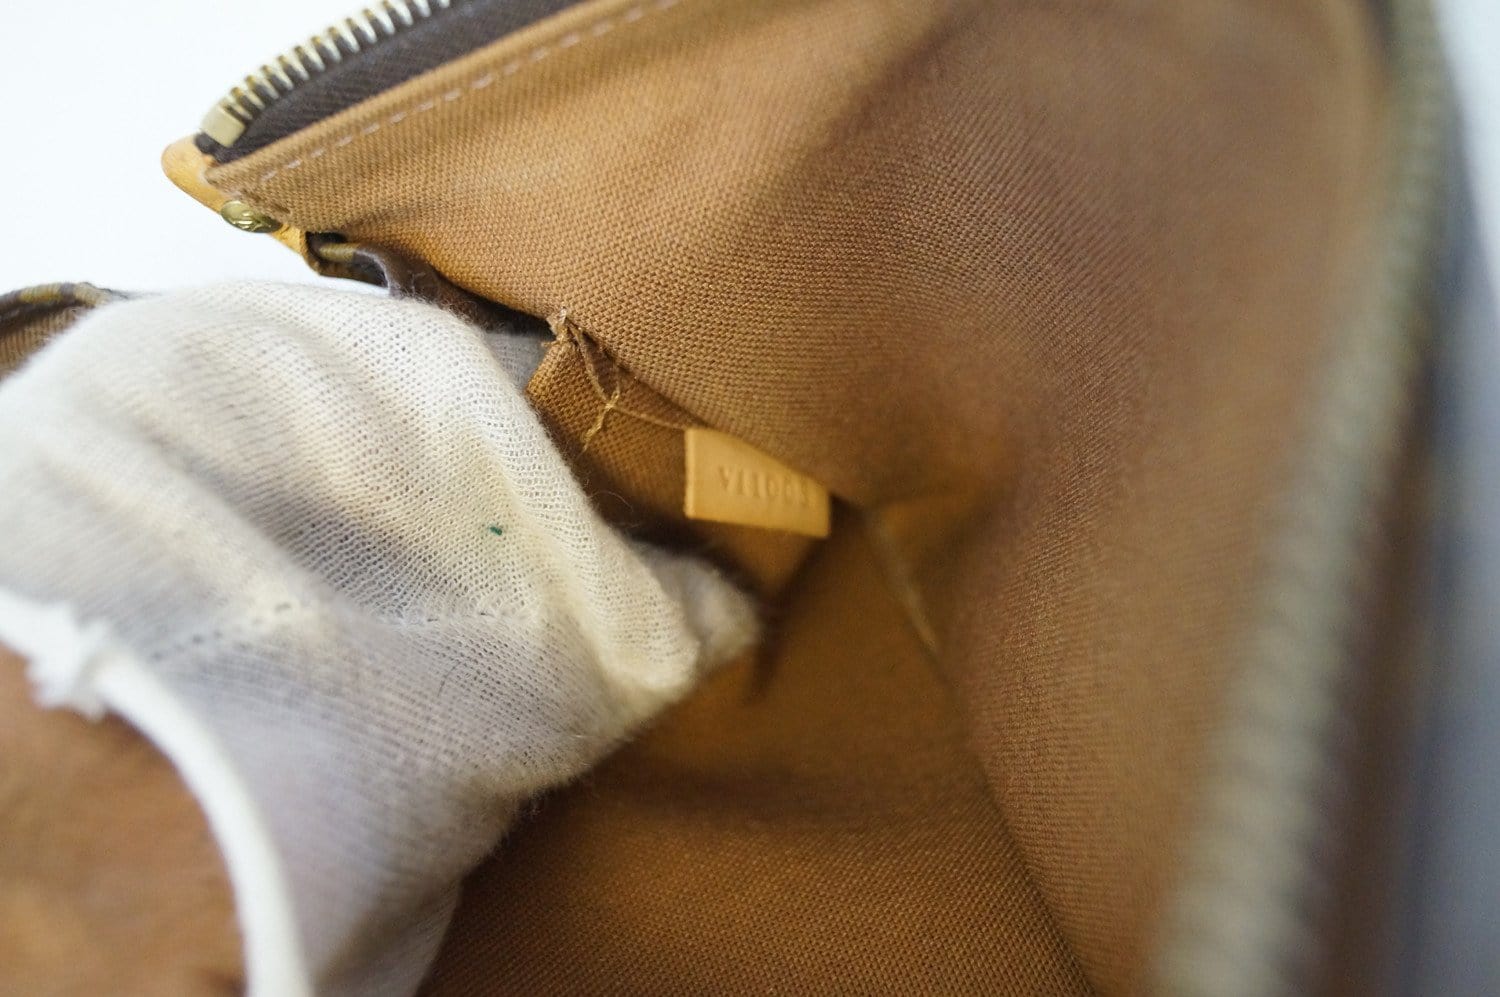 Louis Vuitton Popincourt Long Shoulder Bag Monogram M40008 – AMORE